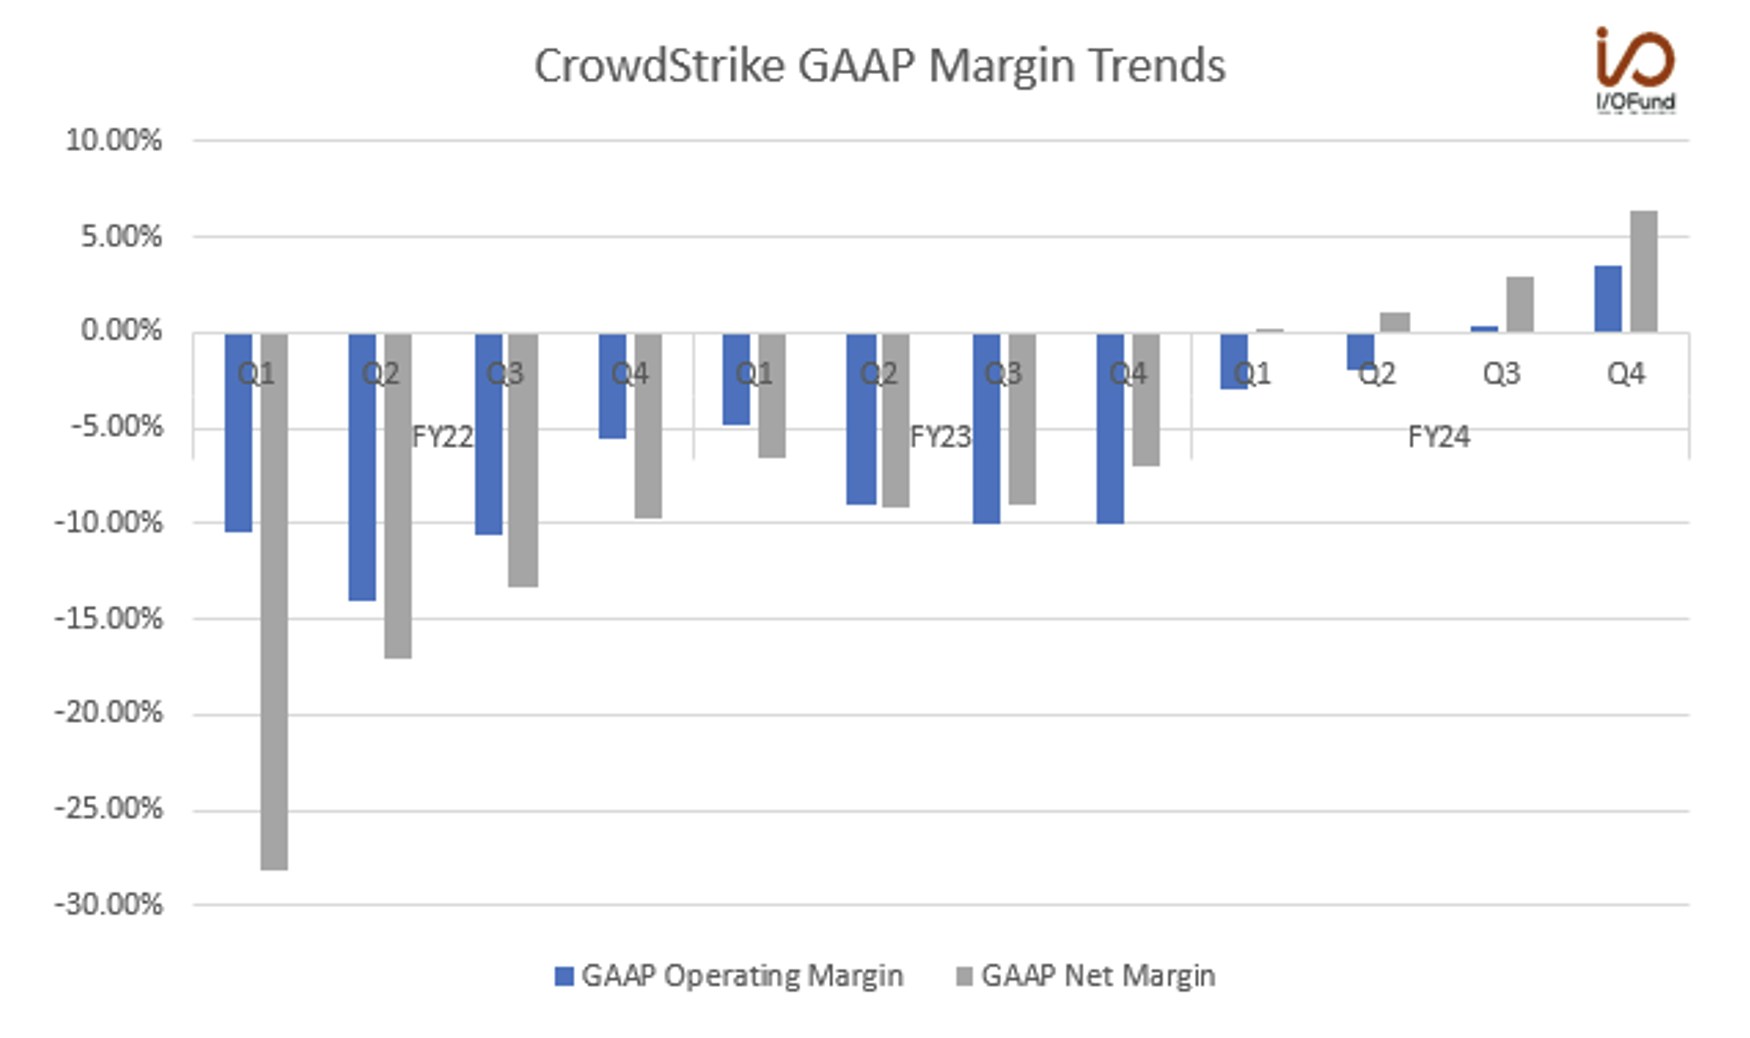 Crowdstrike GAAP Margin Trends